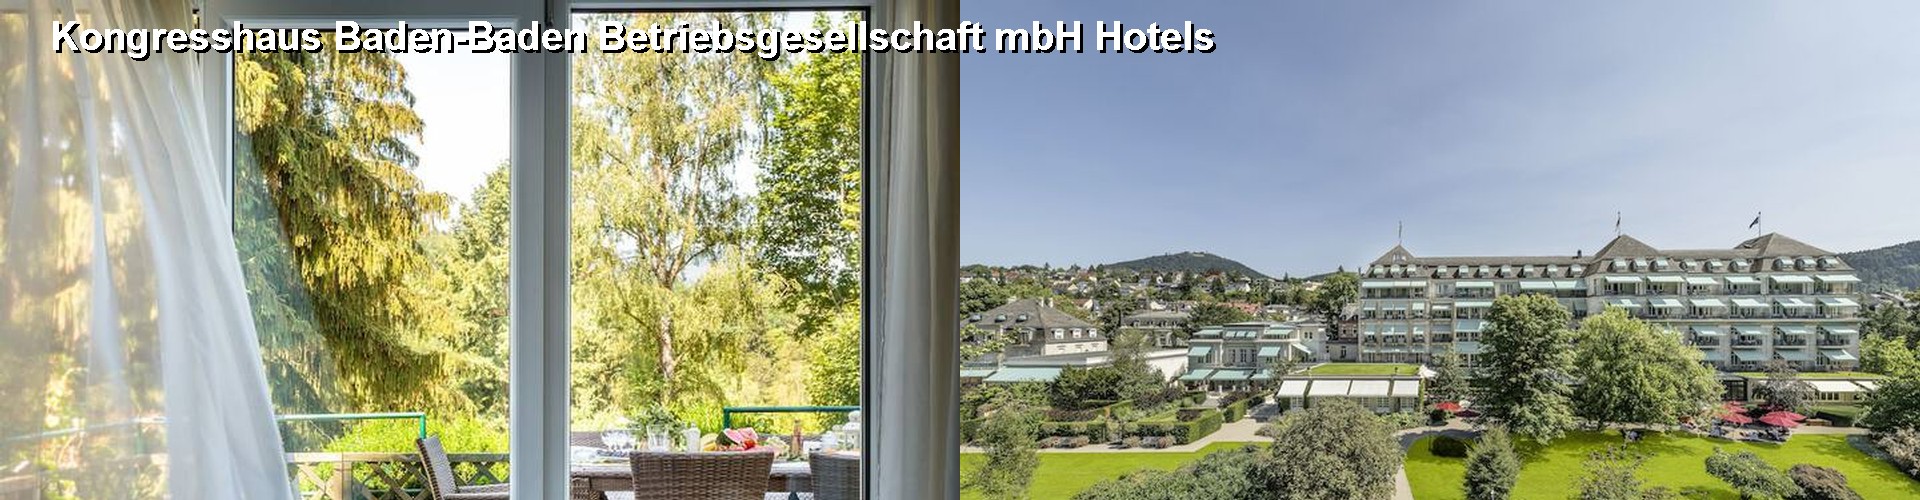 5 Best Hotels near Kongresshaus Baden-Baden Betriebsgesellschaft mbH